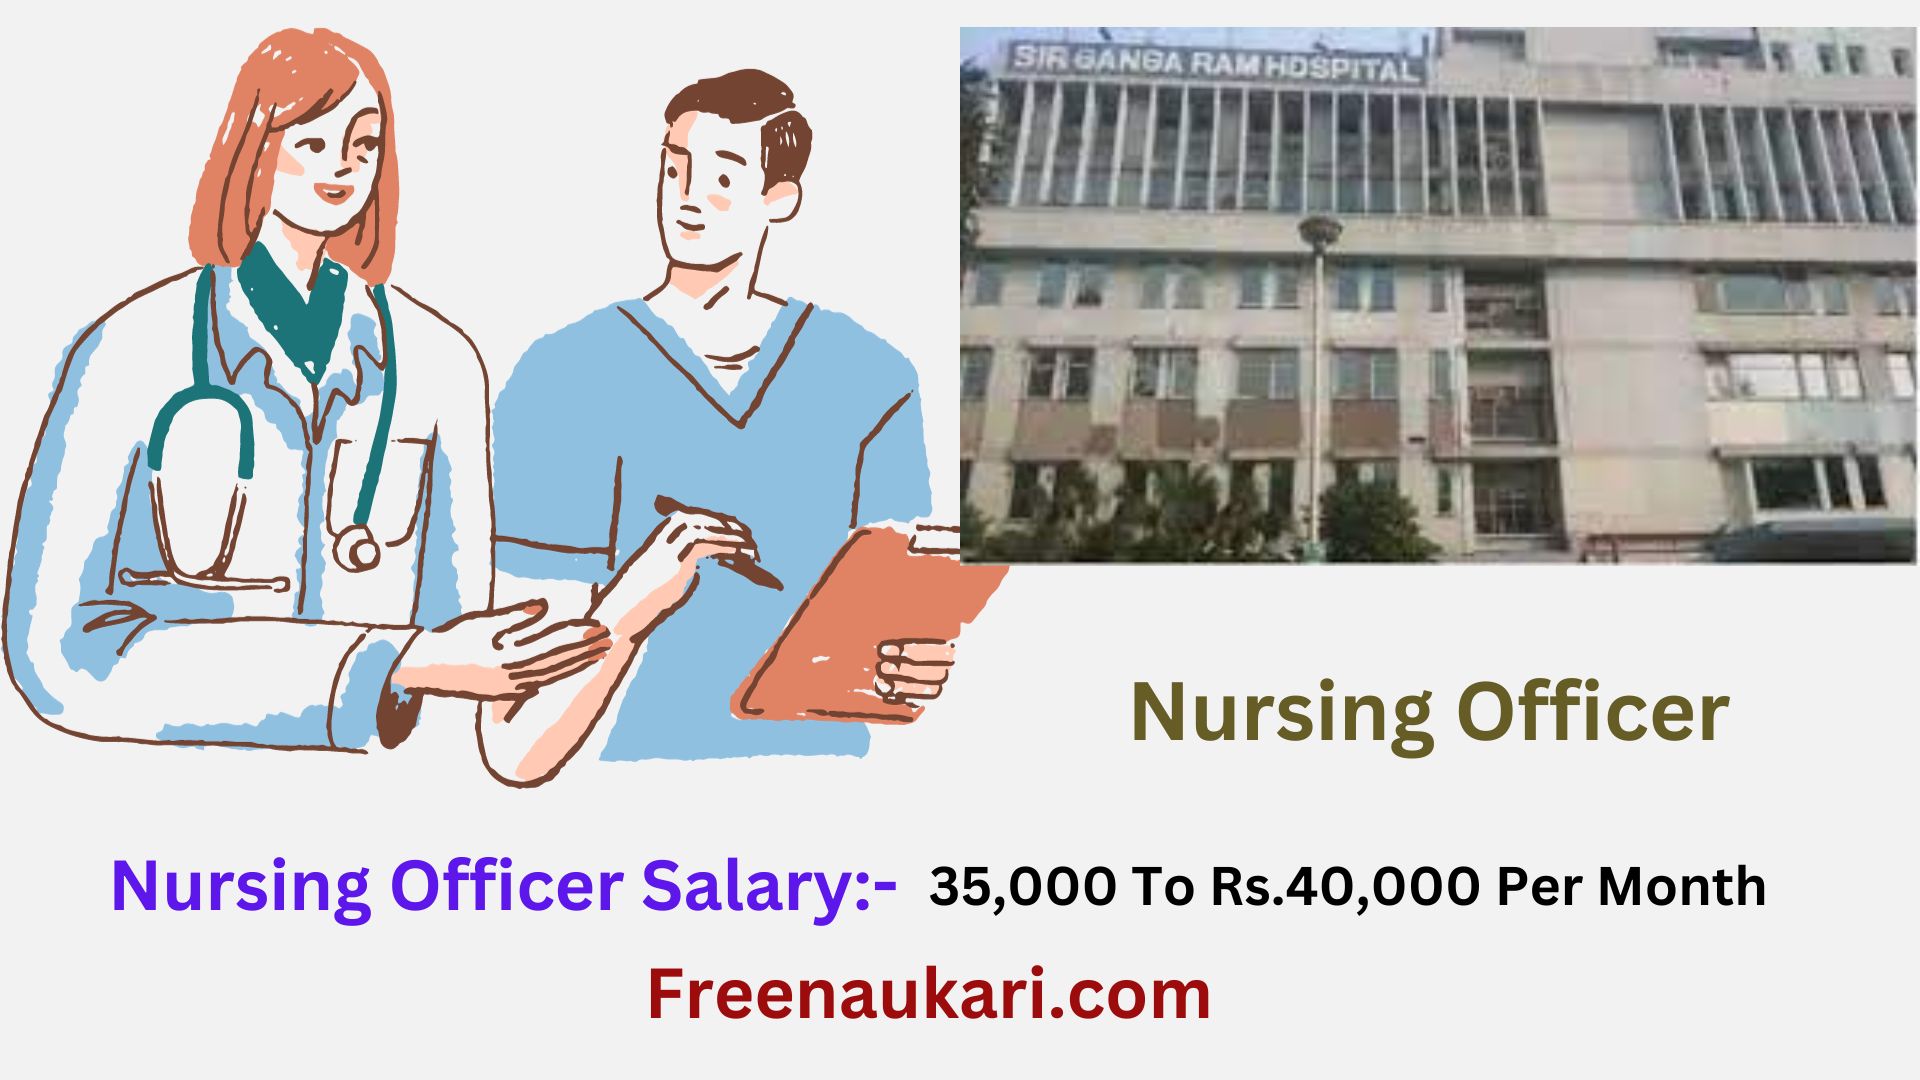 Sir Ganga Ram Hospital Nursing Officer Recruitment 2023